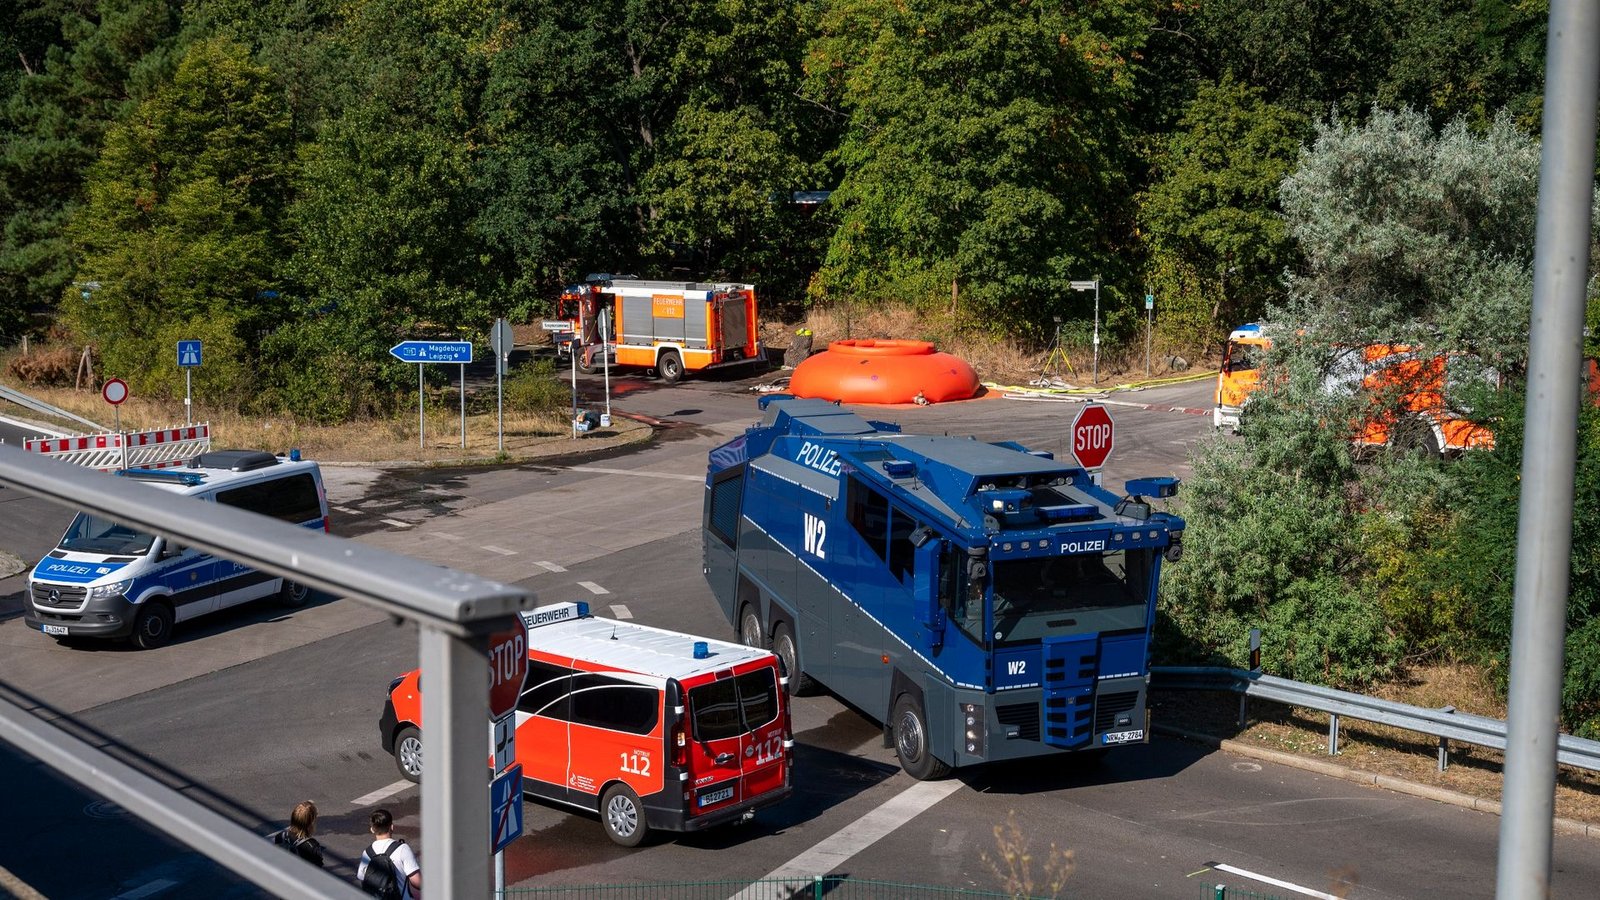 Feuerwehrautos und Fahrzeuge der Polizei stehen in der Nähe der Brandstelle im Grunewald.Foto: Christophe Gateau/dpa